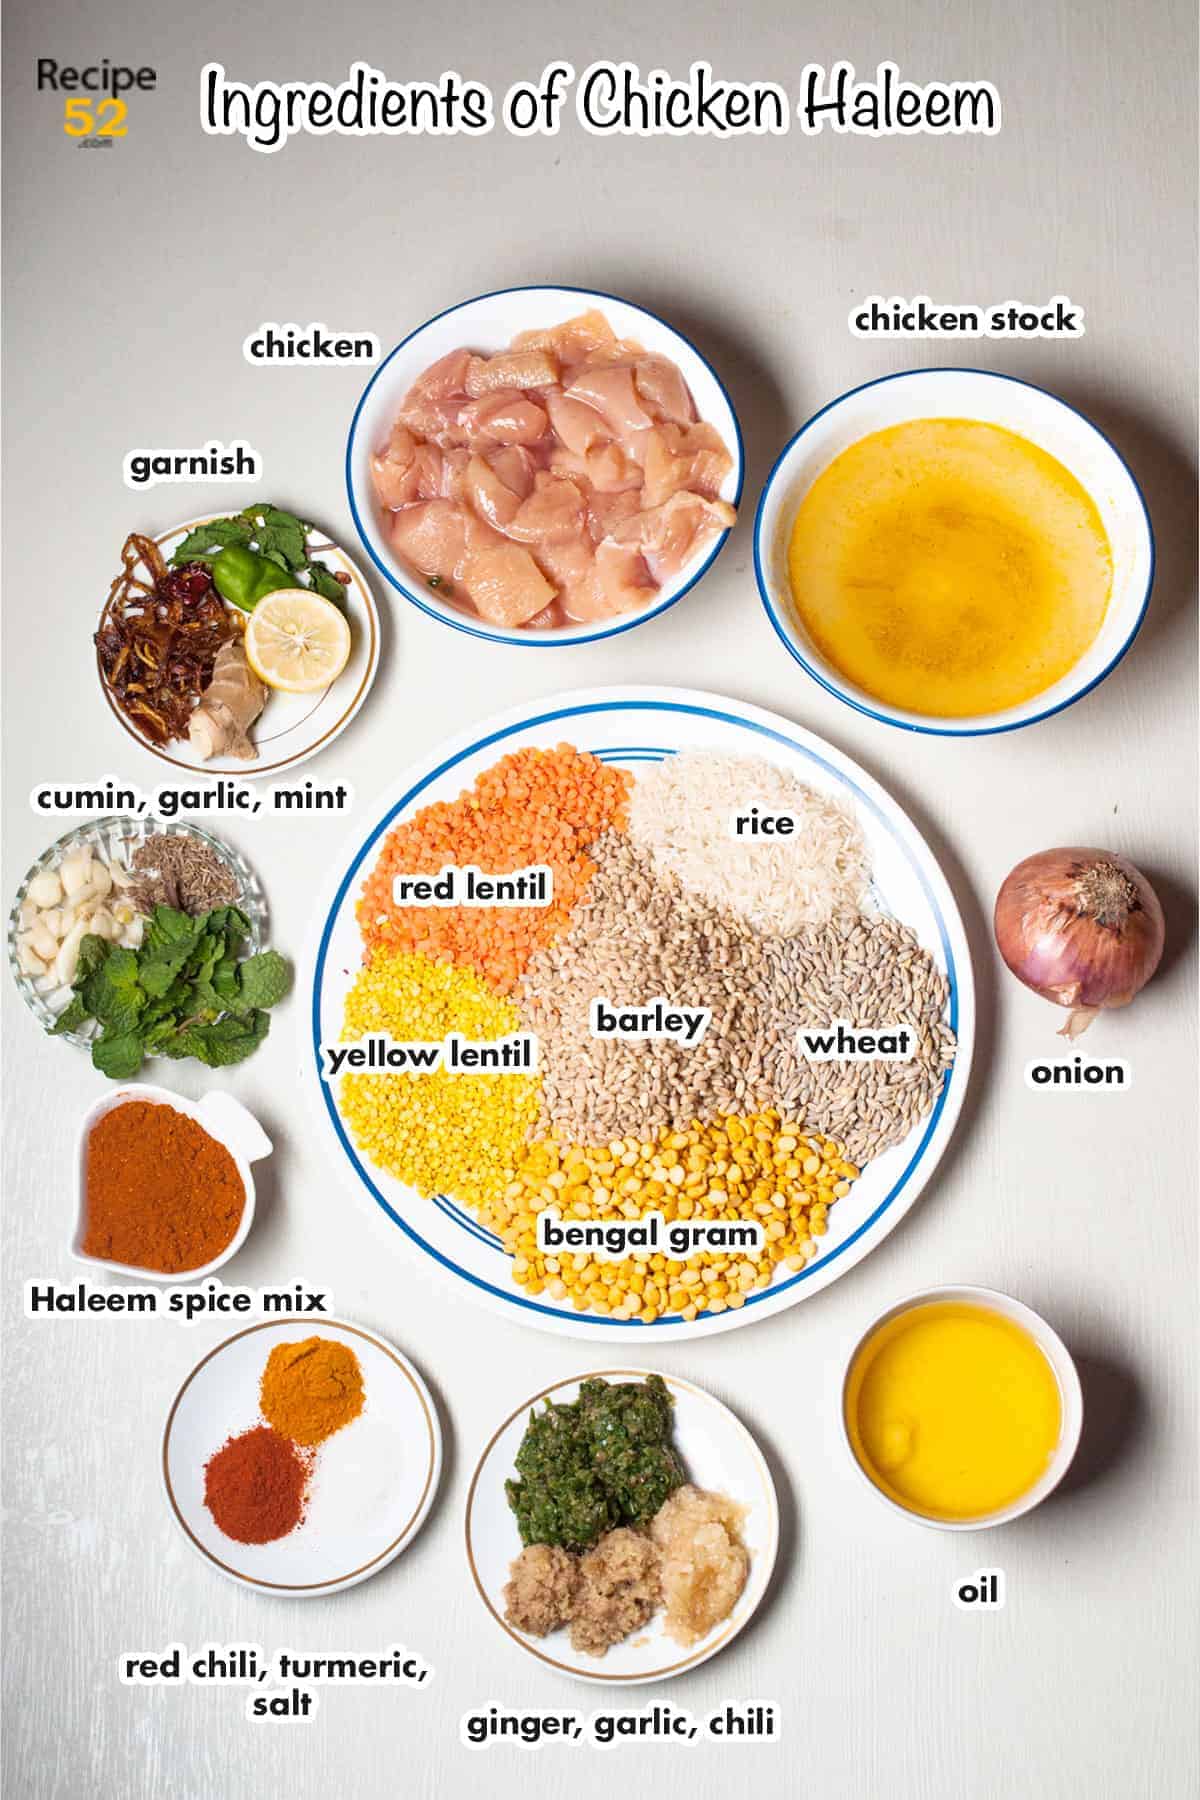 Ingredients of Chicken Haleem.